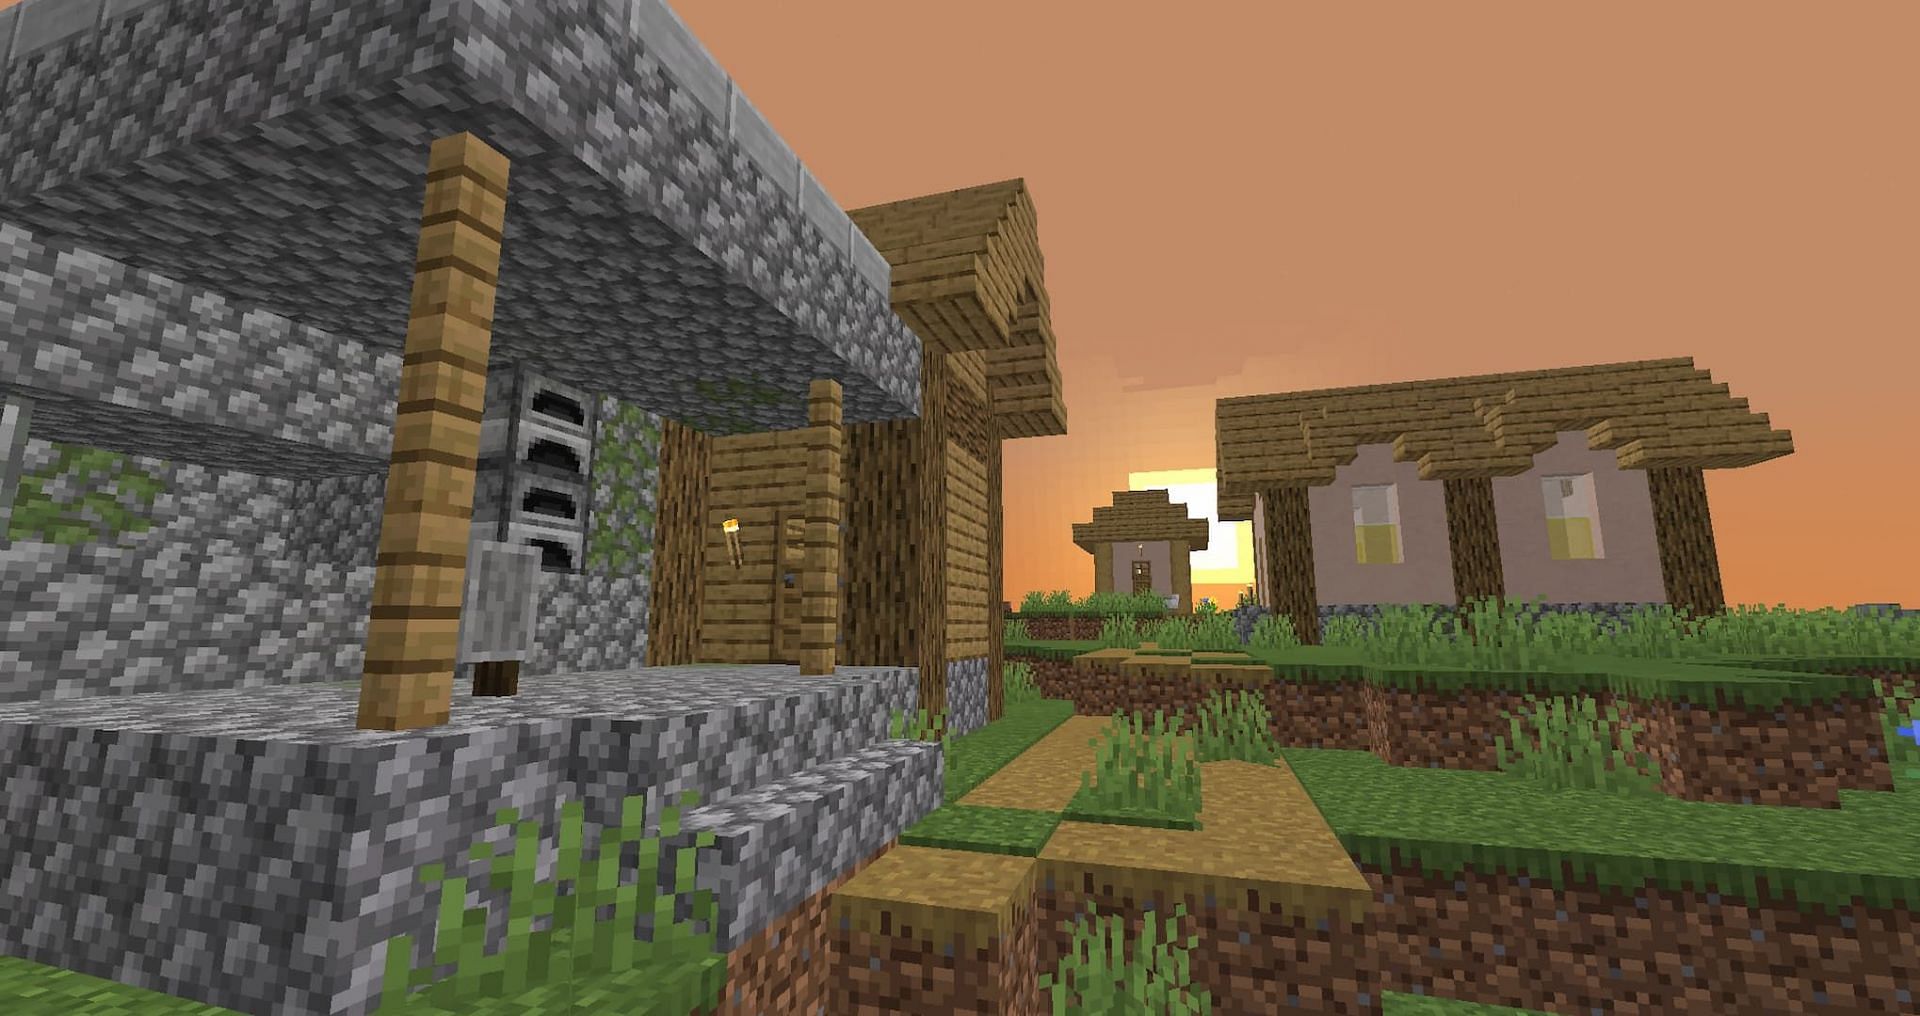 Village with blacksmith house (Image via Mojang)